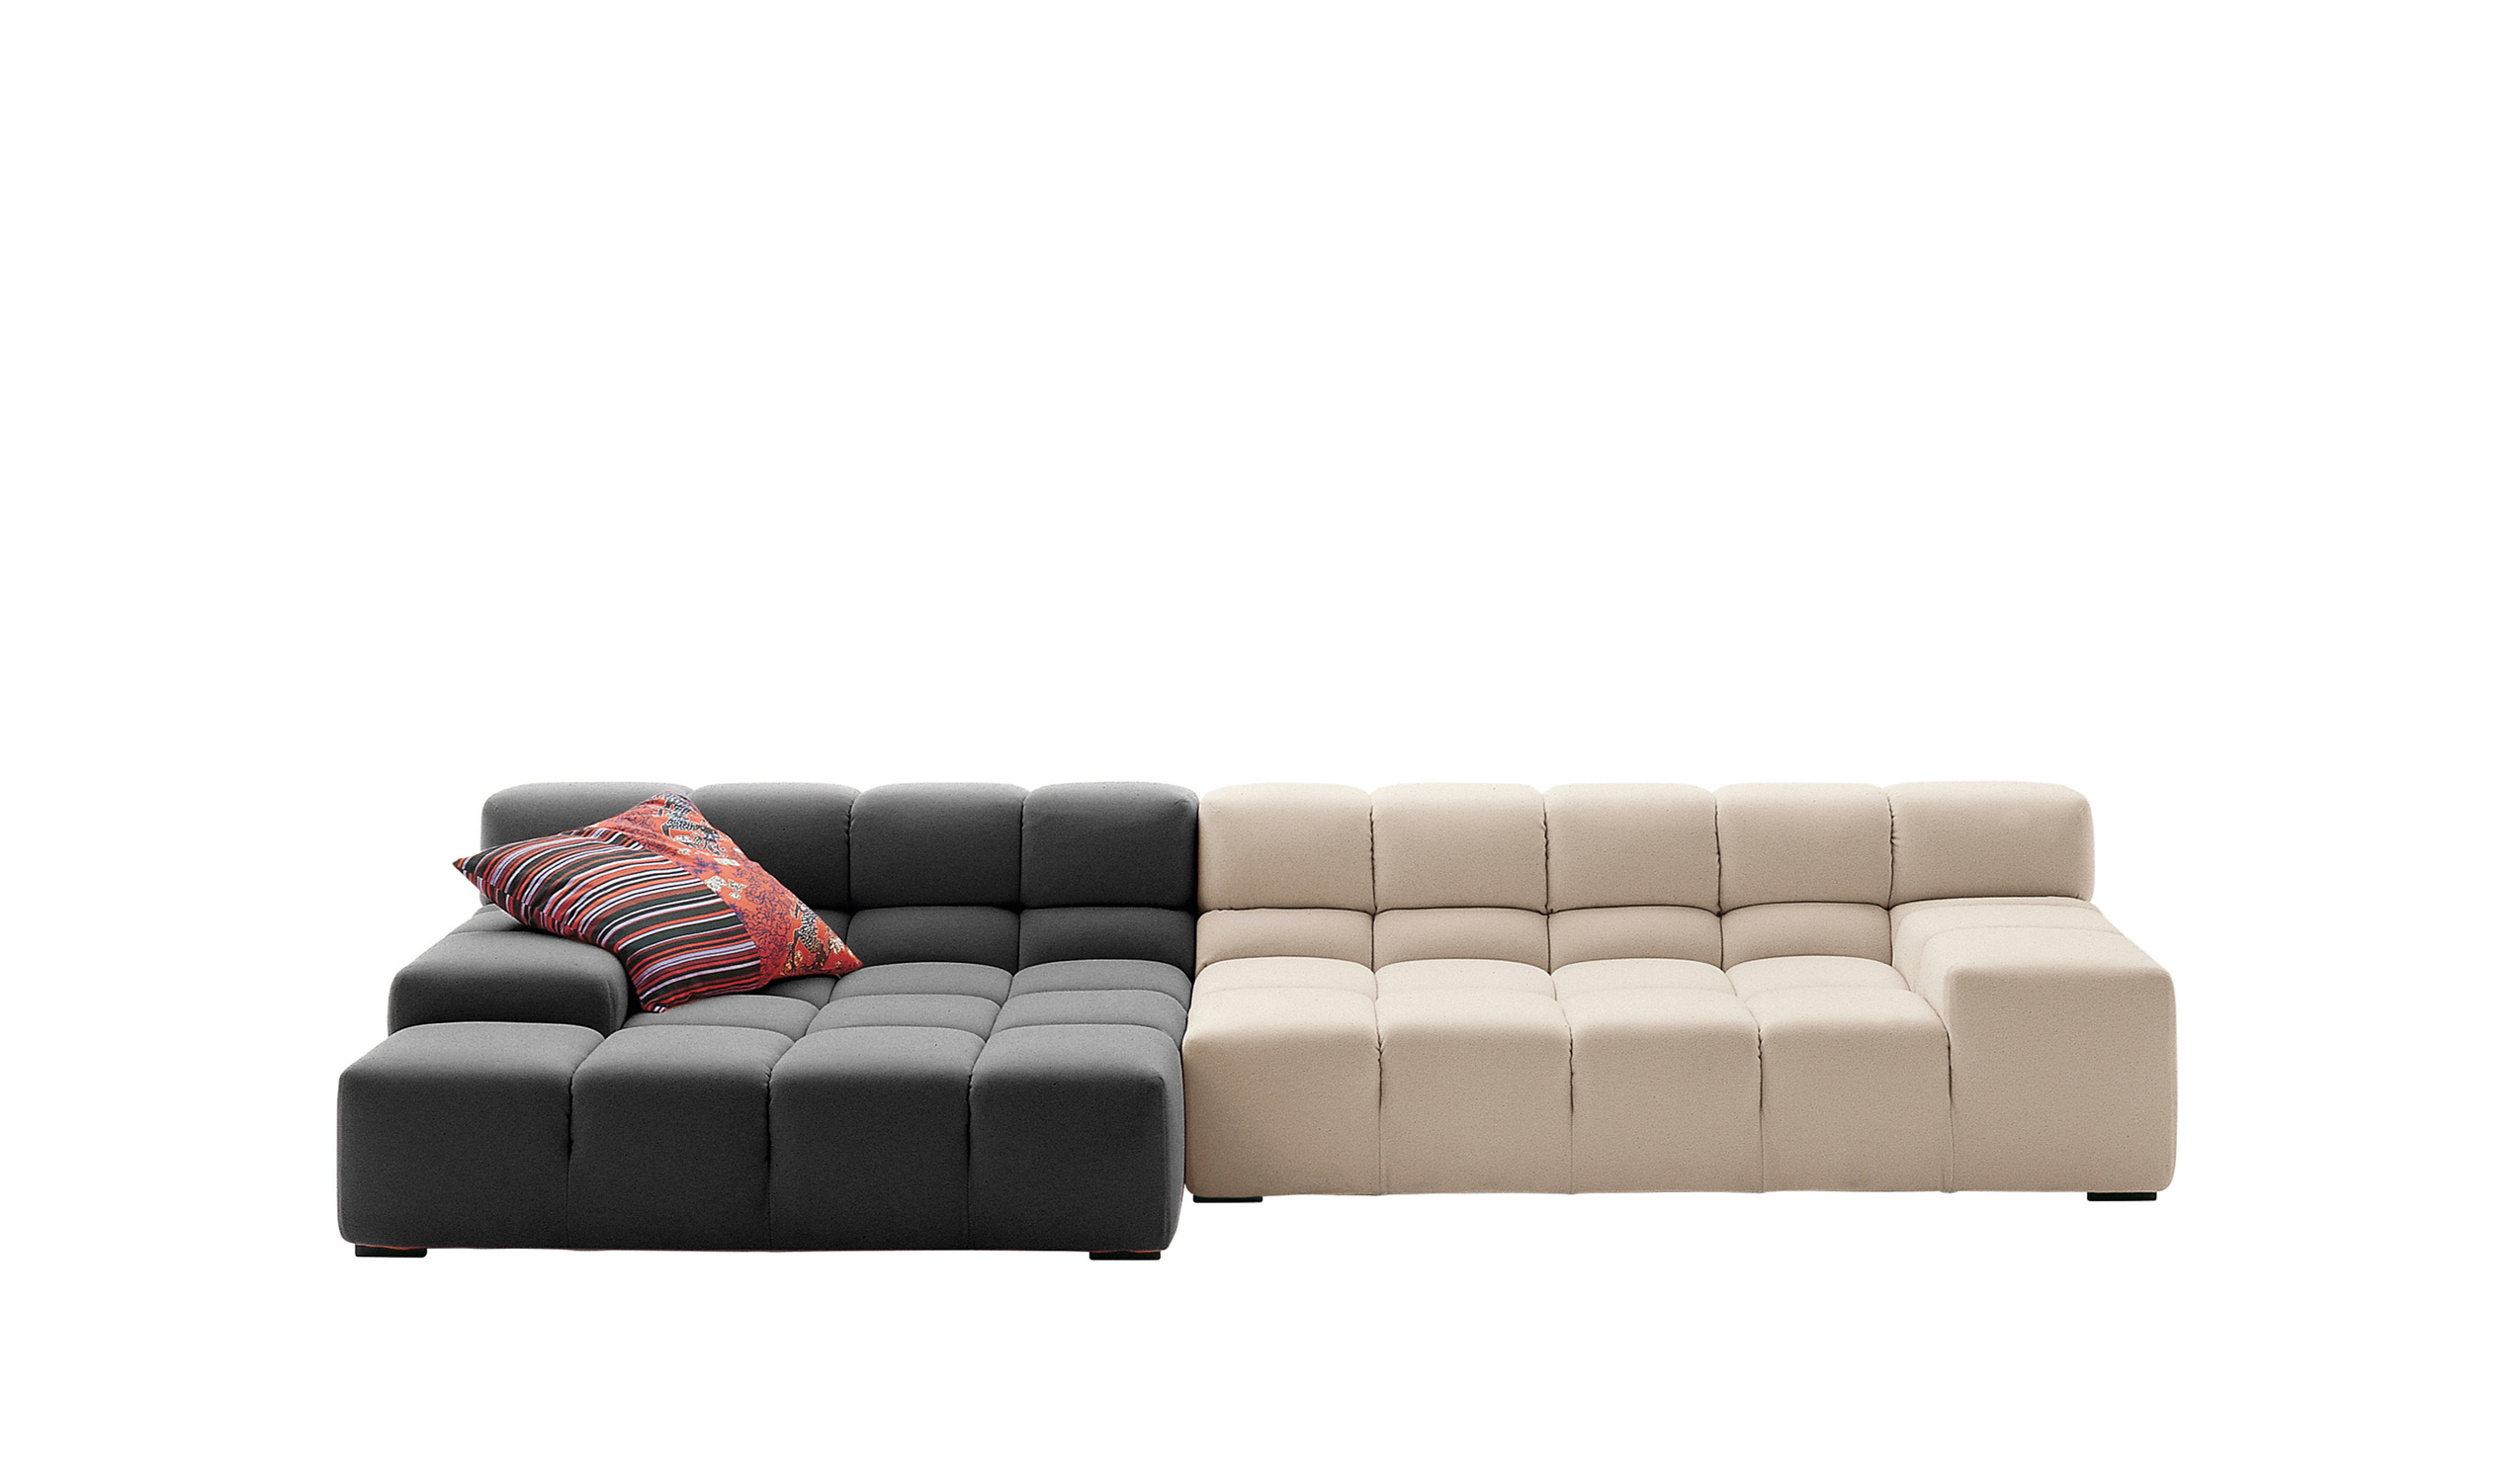 Modern designer italian sofas - Tufty-Time Sofas